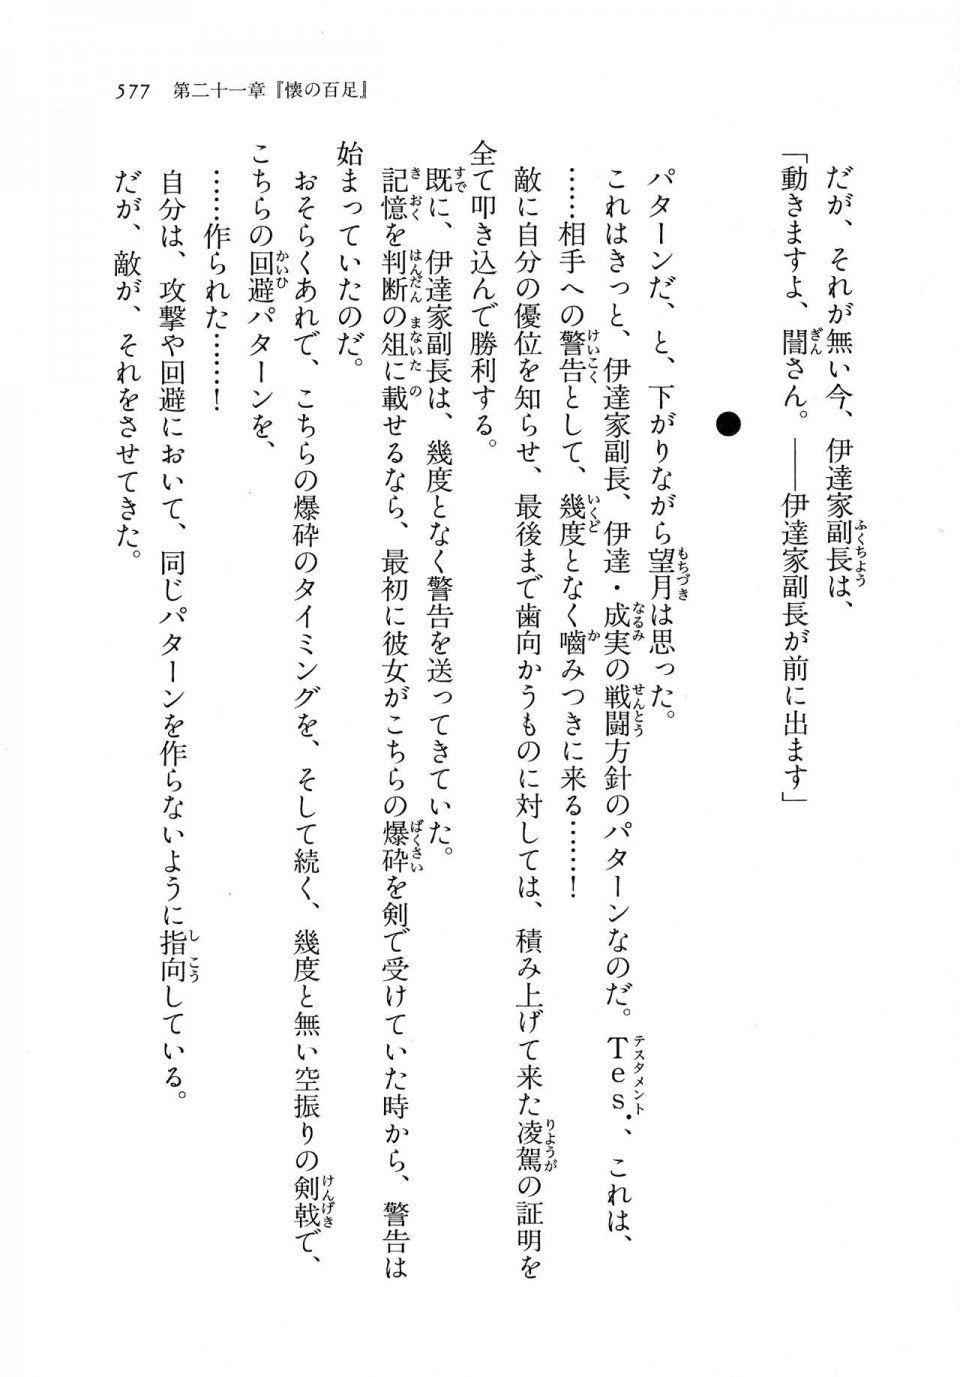 Kyoukai Senjou no Horizon LN Vol 11(5A) - Photo #577